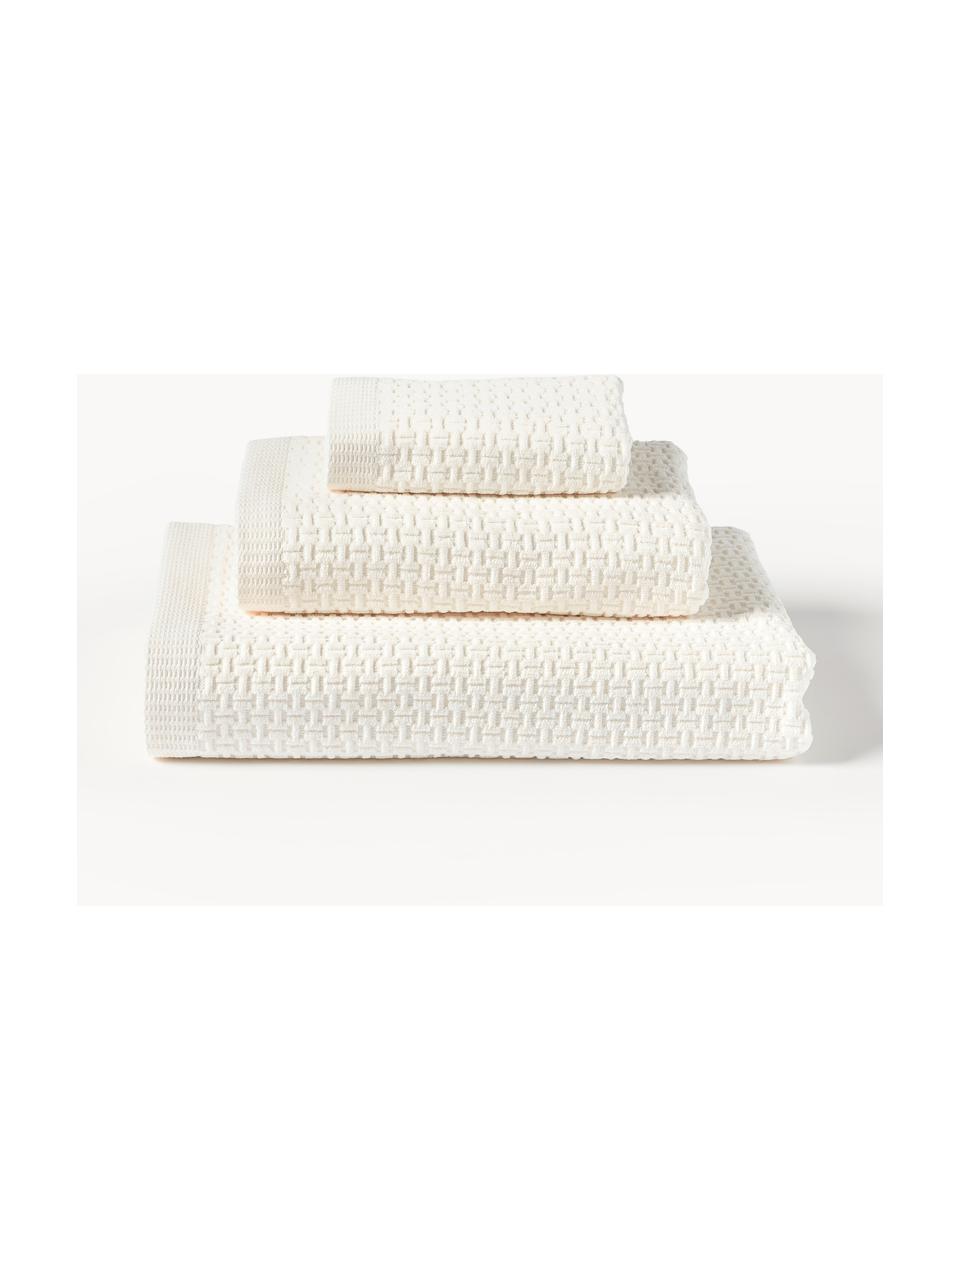 Komplet ręczników Niam, 3 elem., Kremowobiały, Komplet z różnymi rozmiarami